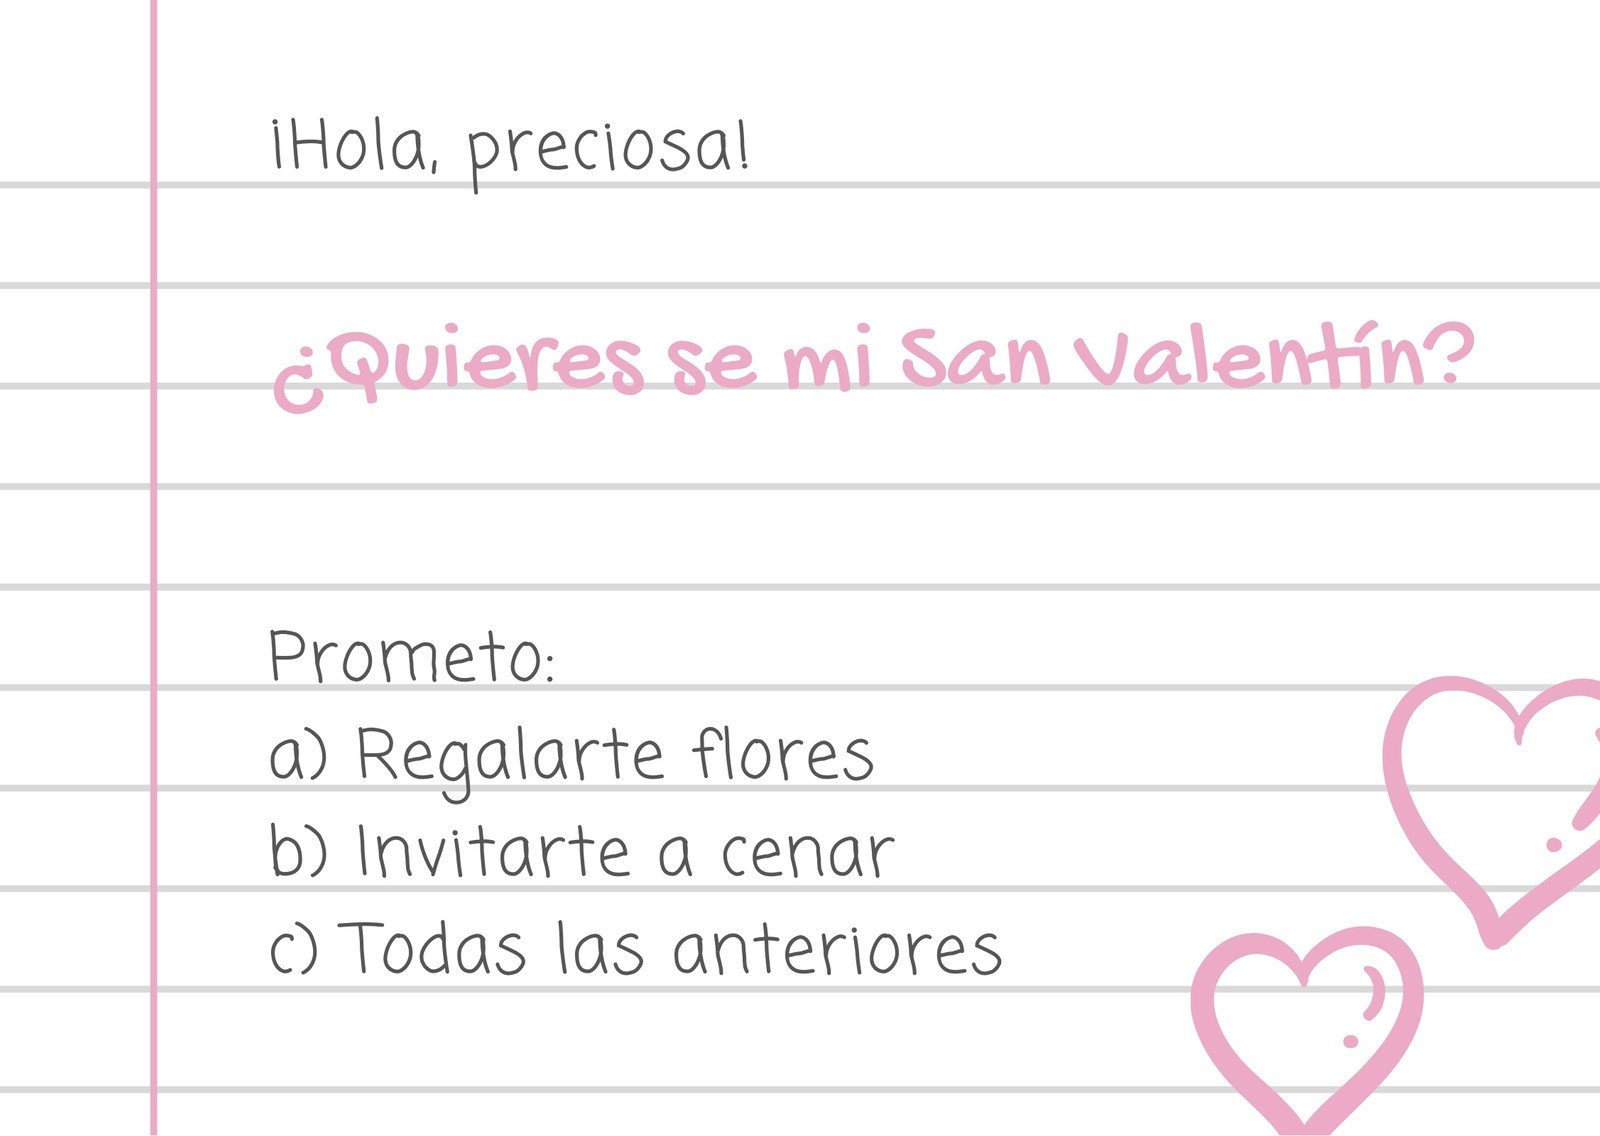 14 de febrero: Ideas para emprender en San Valentín